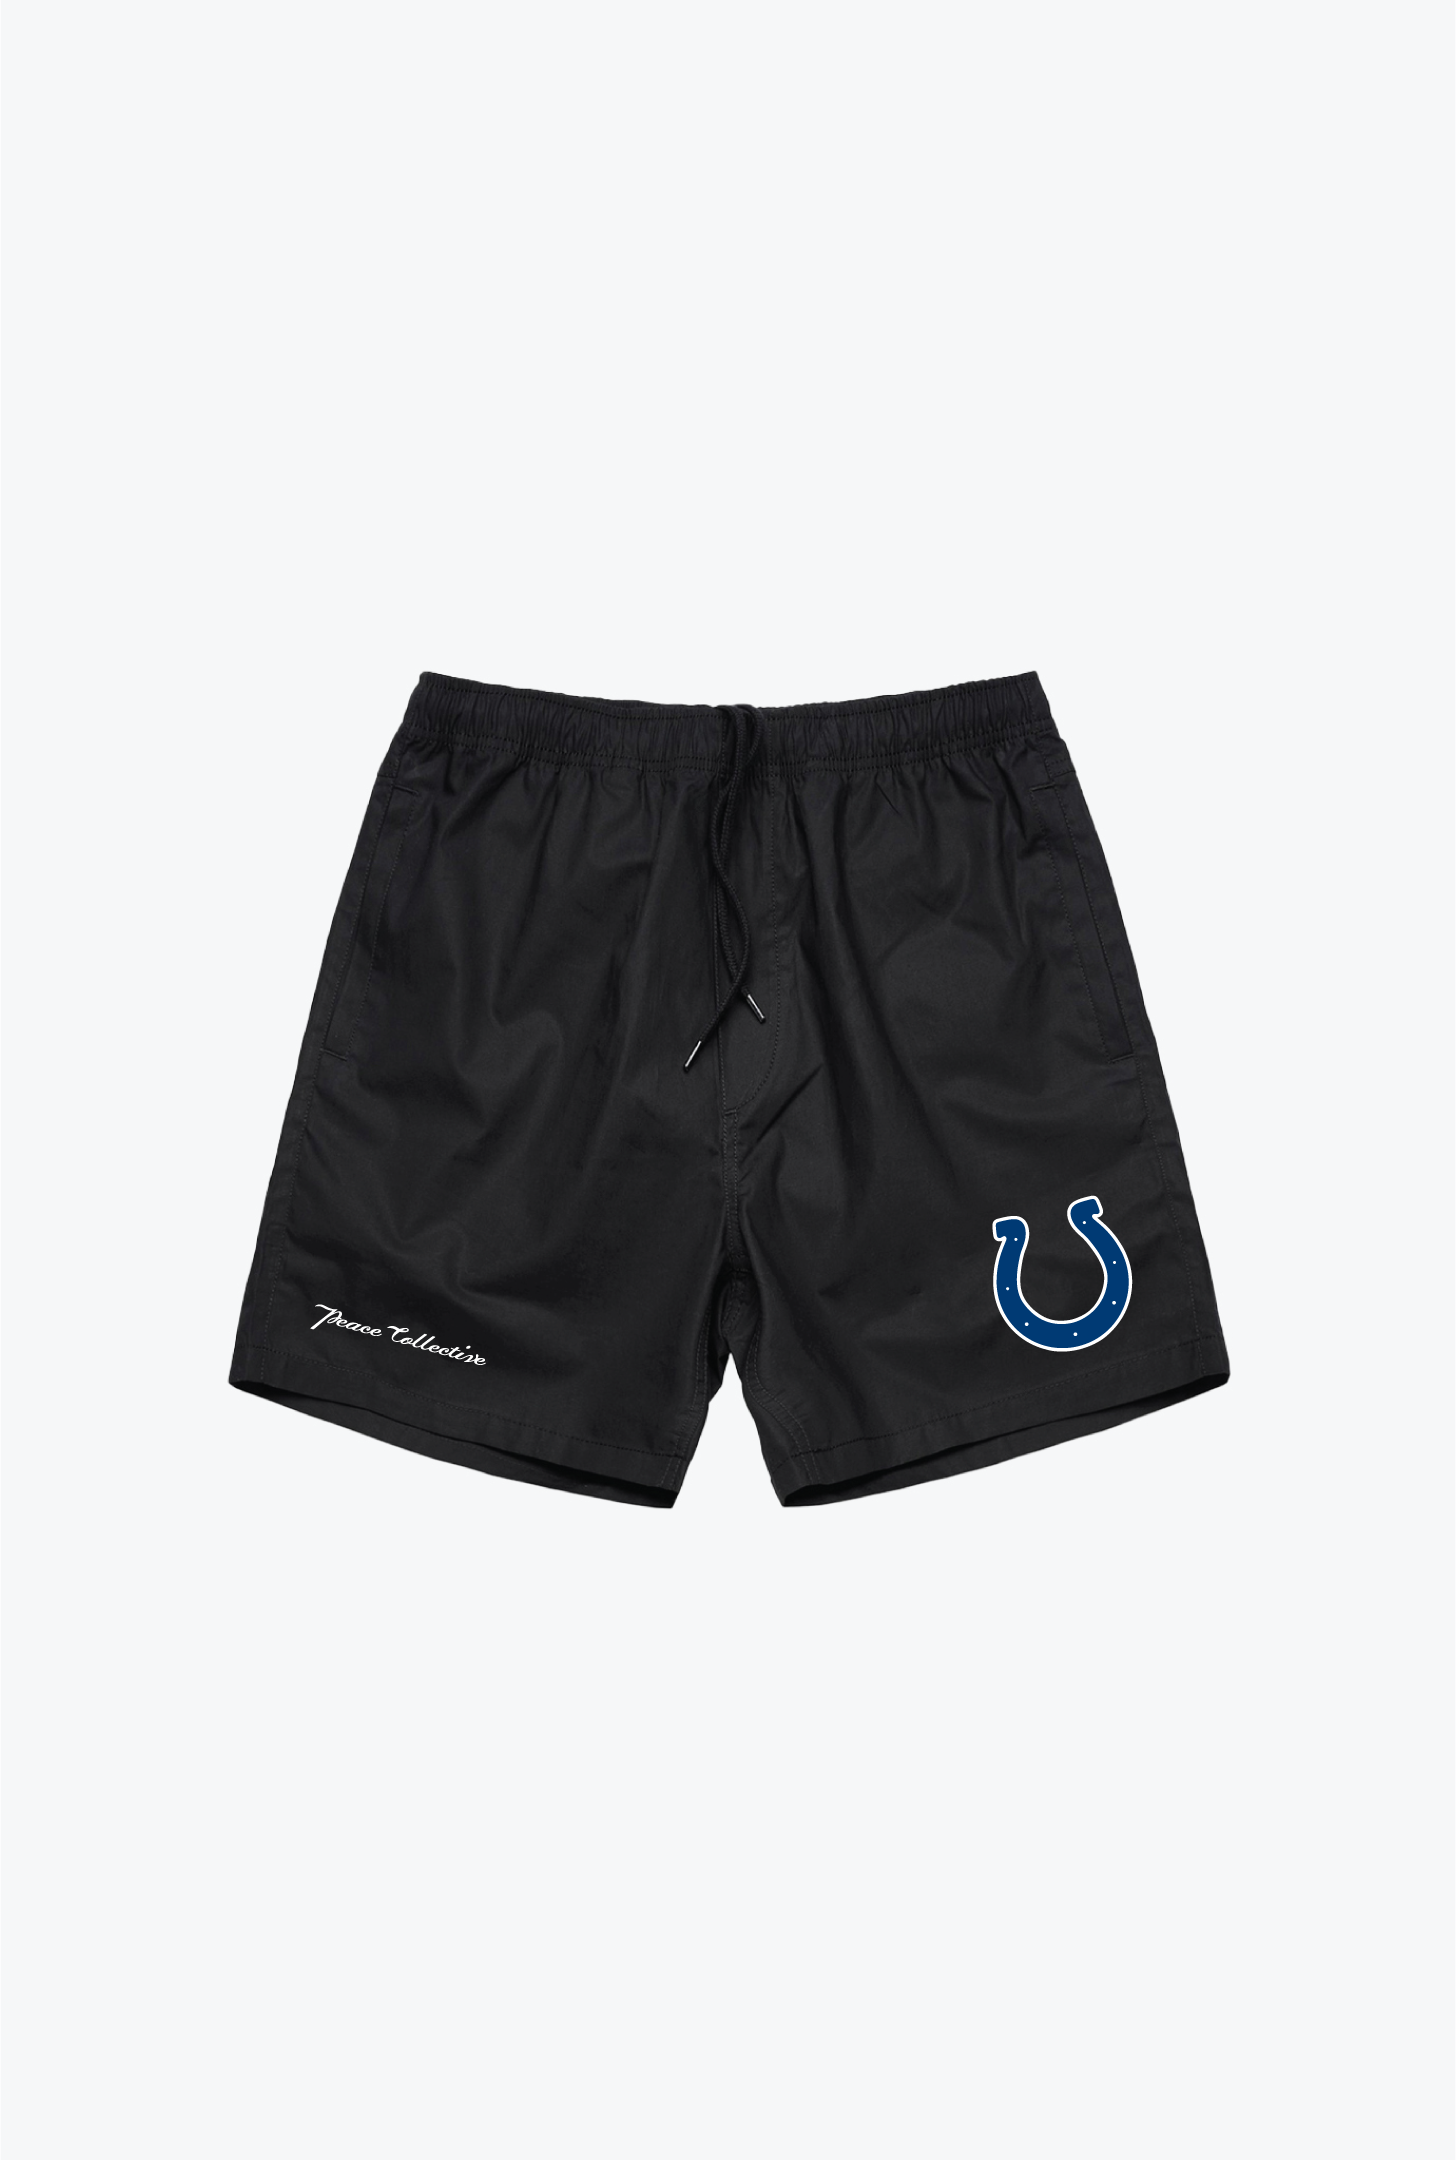 Indianapolis Colts Board Shorts - Black